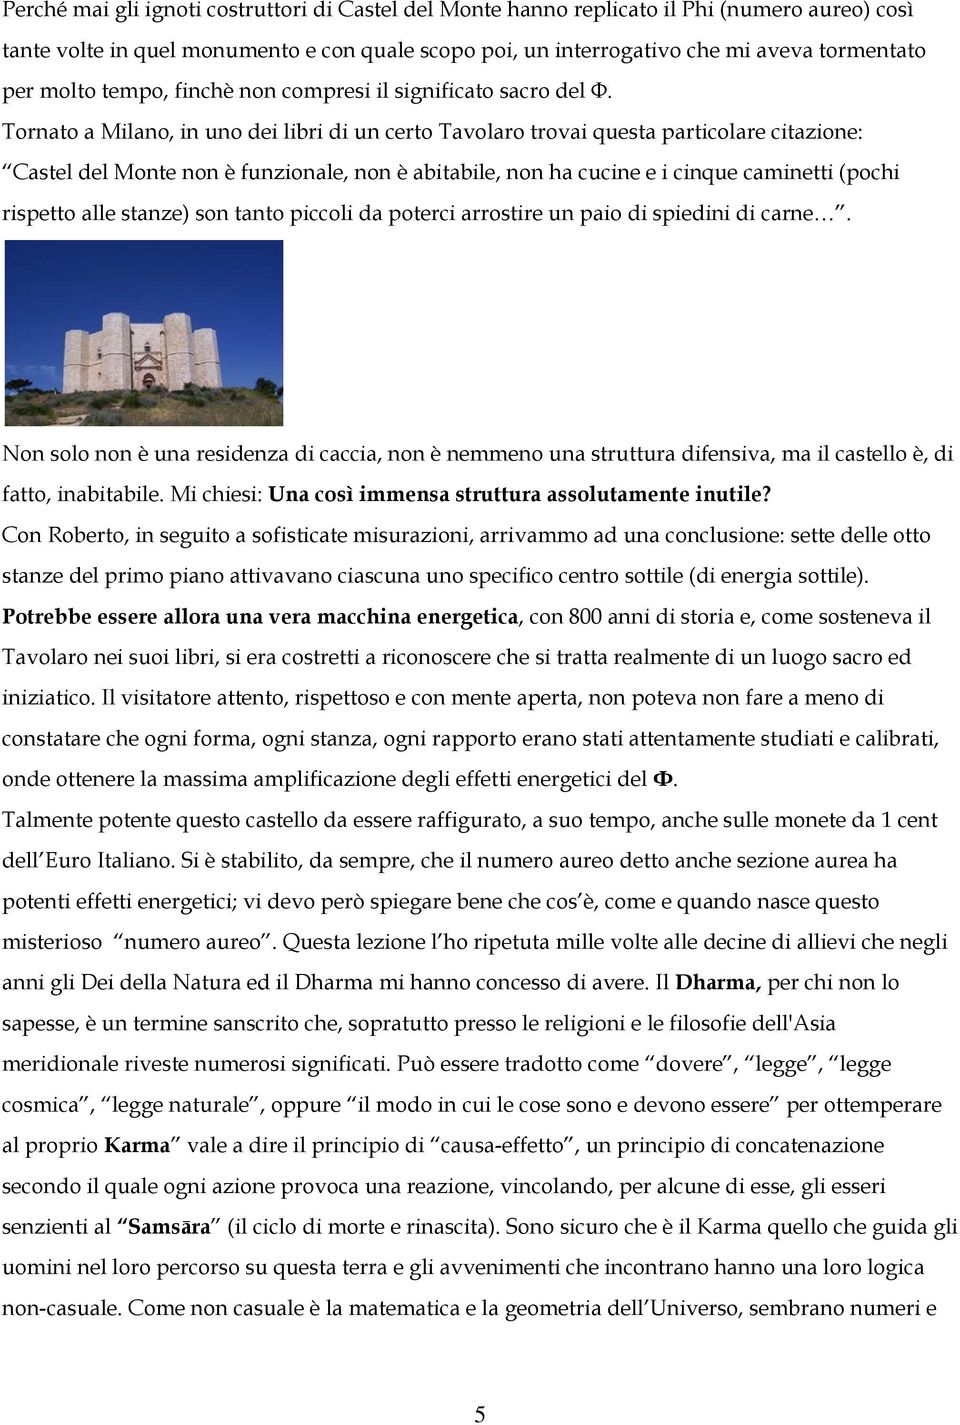 Tornato a Milano, in uno dei libri di un certo Tavolaro trovai questa particolare citazione: Castel del Monte non è funzionale, non è abitabile, non ha cucine e i cinque caminetti (pochi rispetto